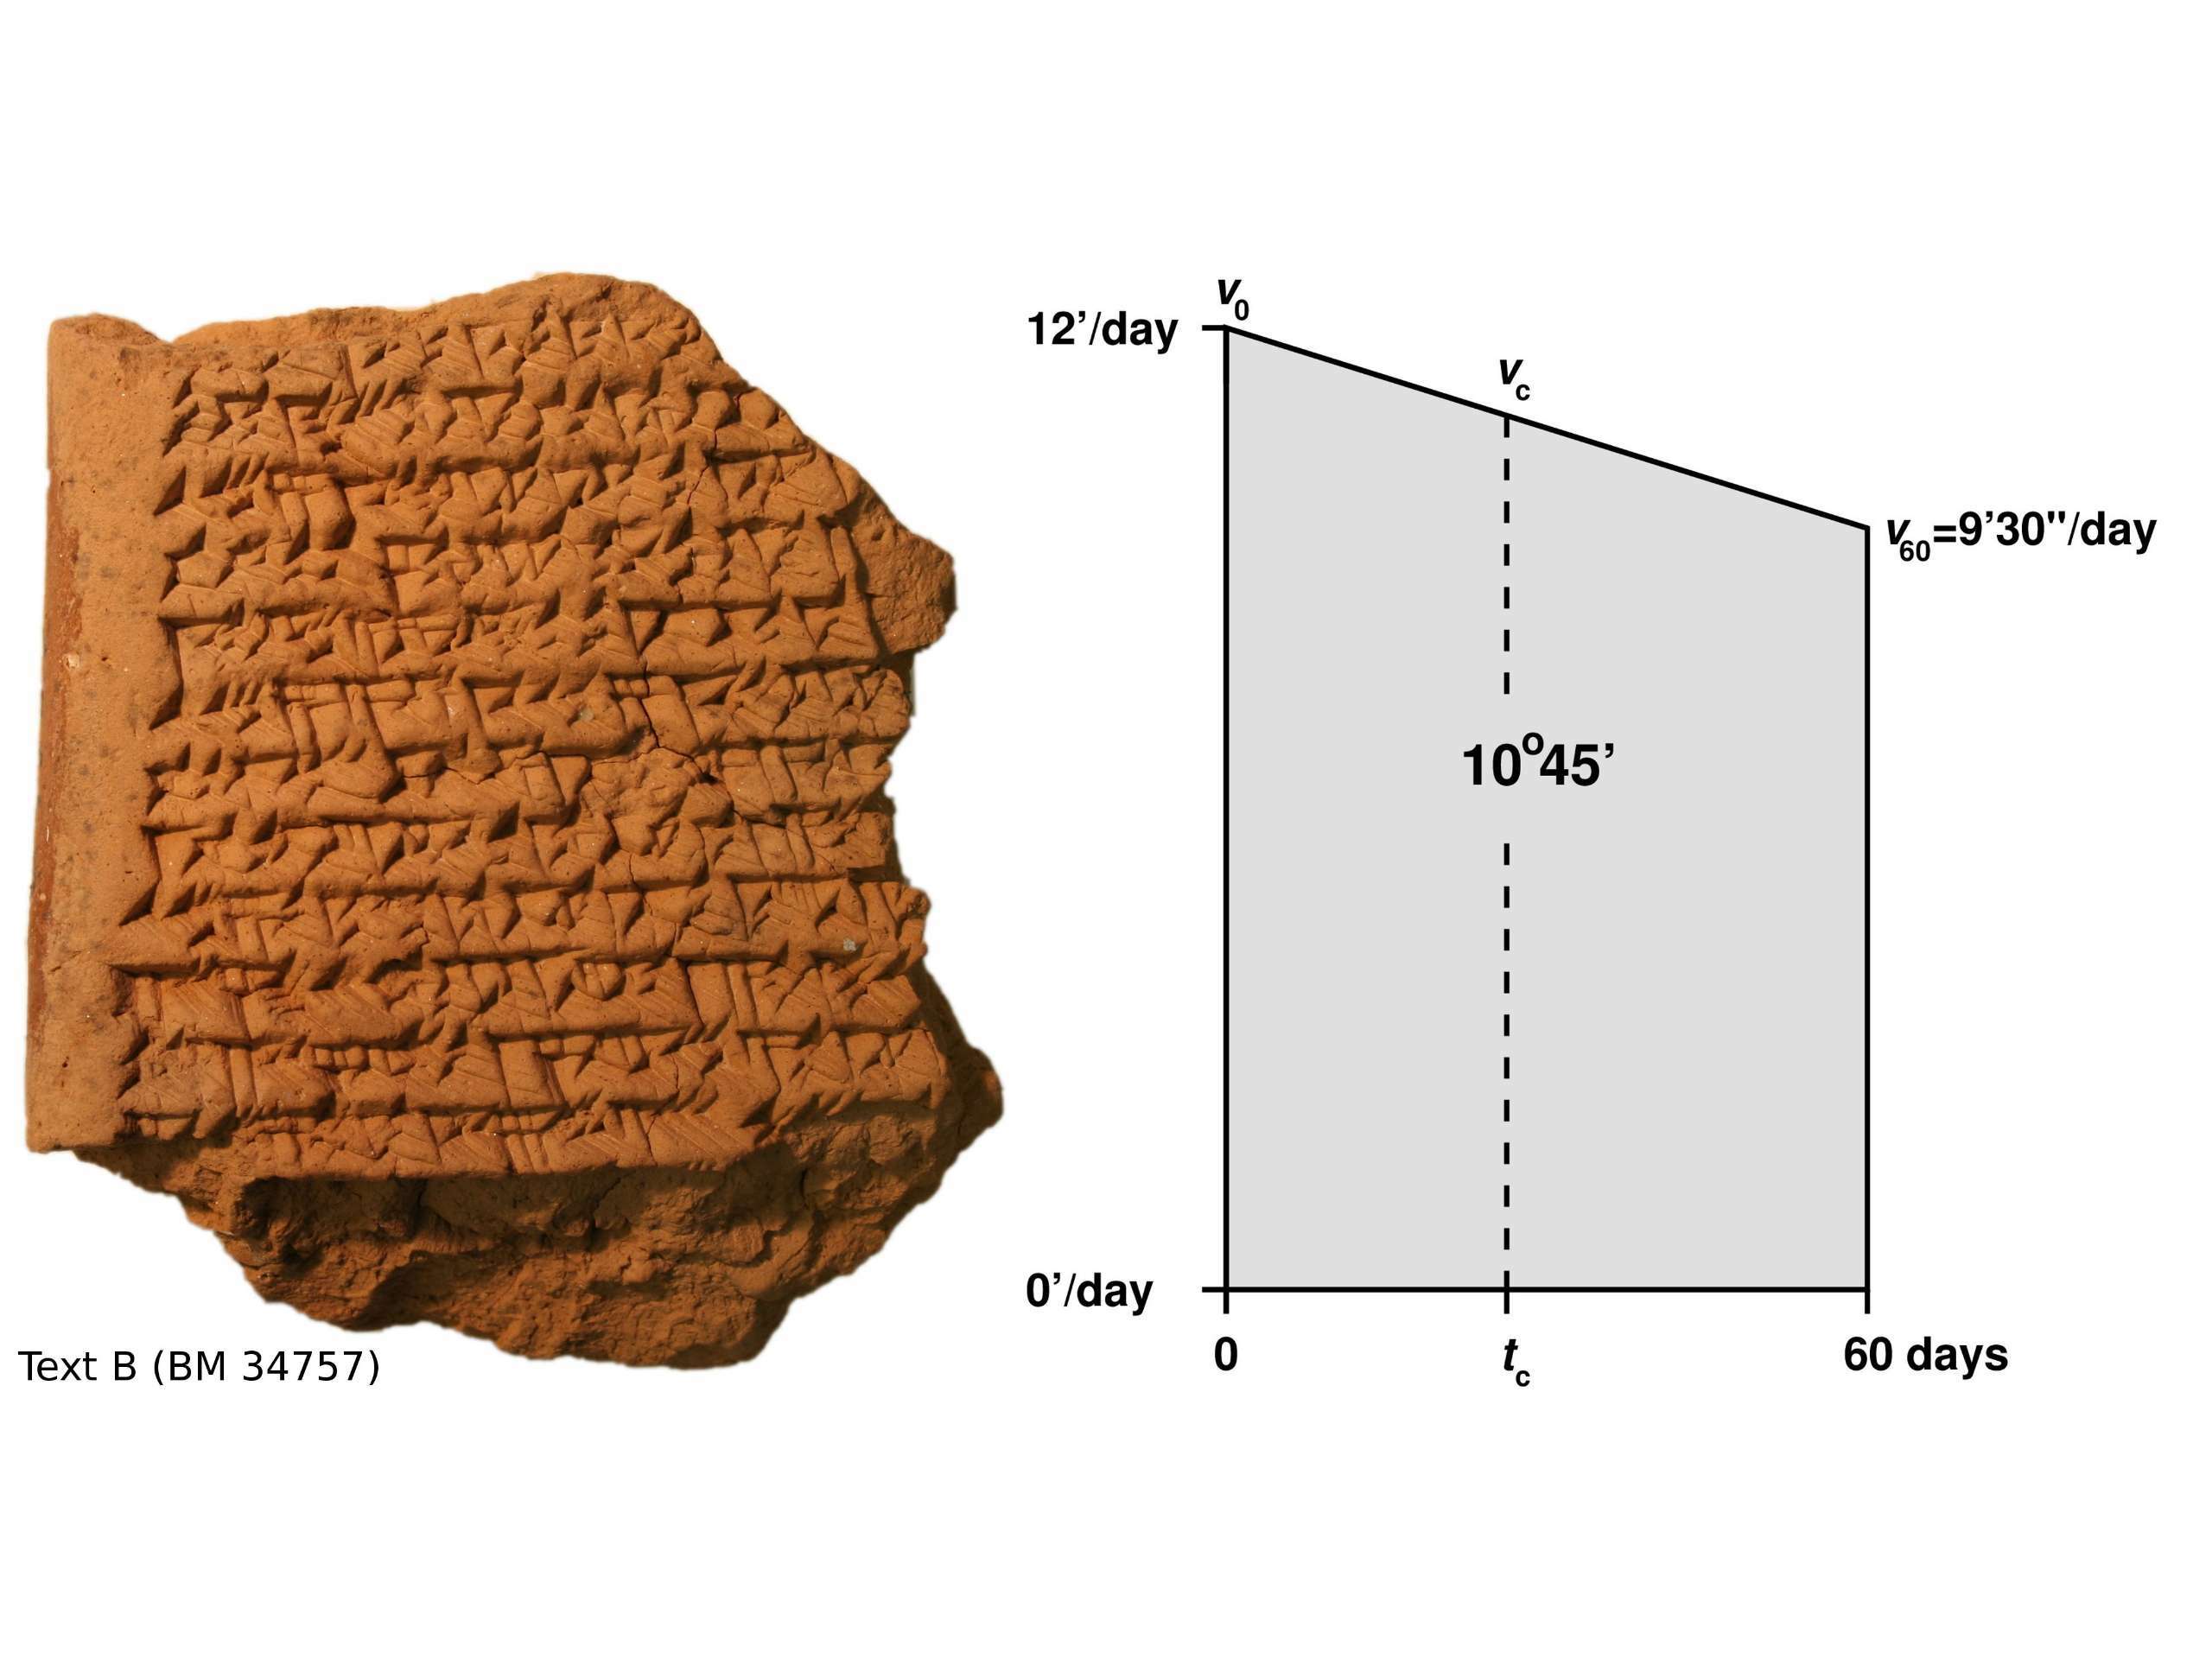 Starodavne babilonske tablete